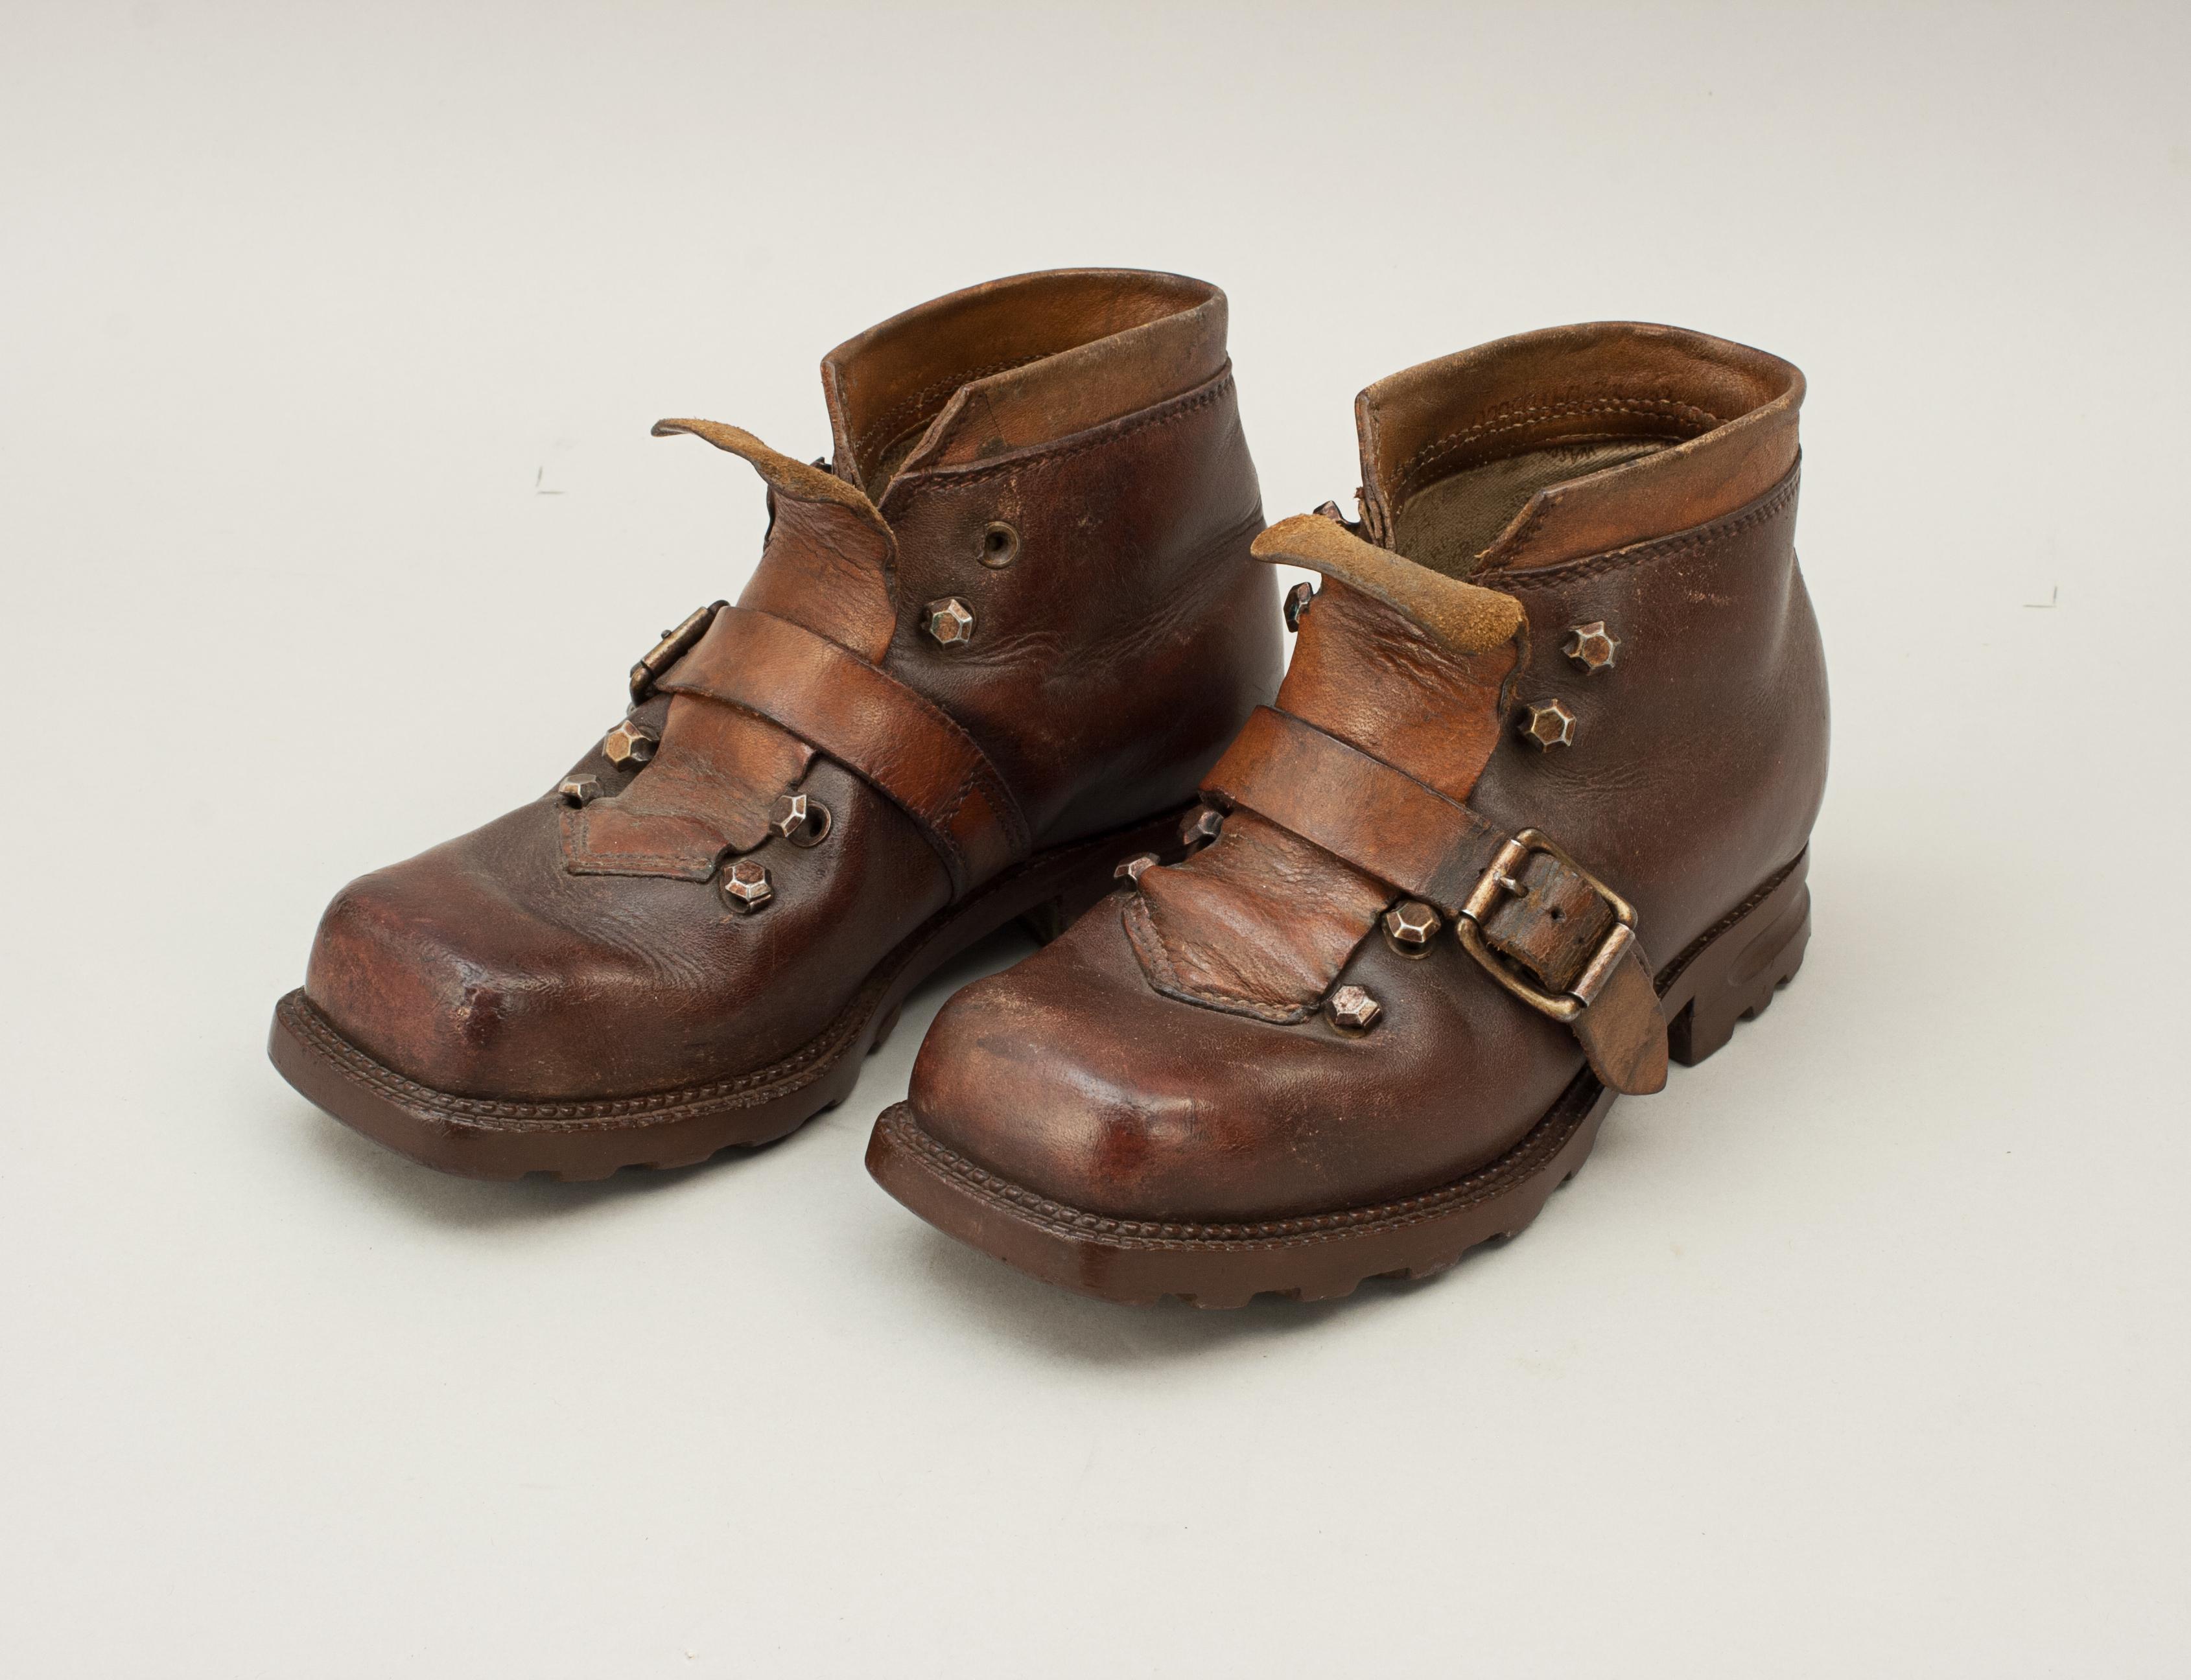 Chaussures de ski en cuir imperméable pour enfant.
Une paire de chaussures de ski allemandes à bout carré pour enfants. Le cuir marron des bottes est en excellent état, la matière intérieure légèrement effilochée au niveau du talon. Le matériau est